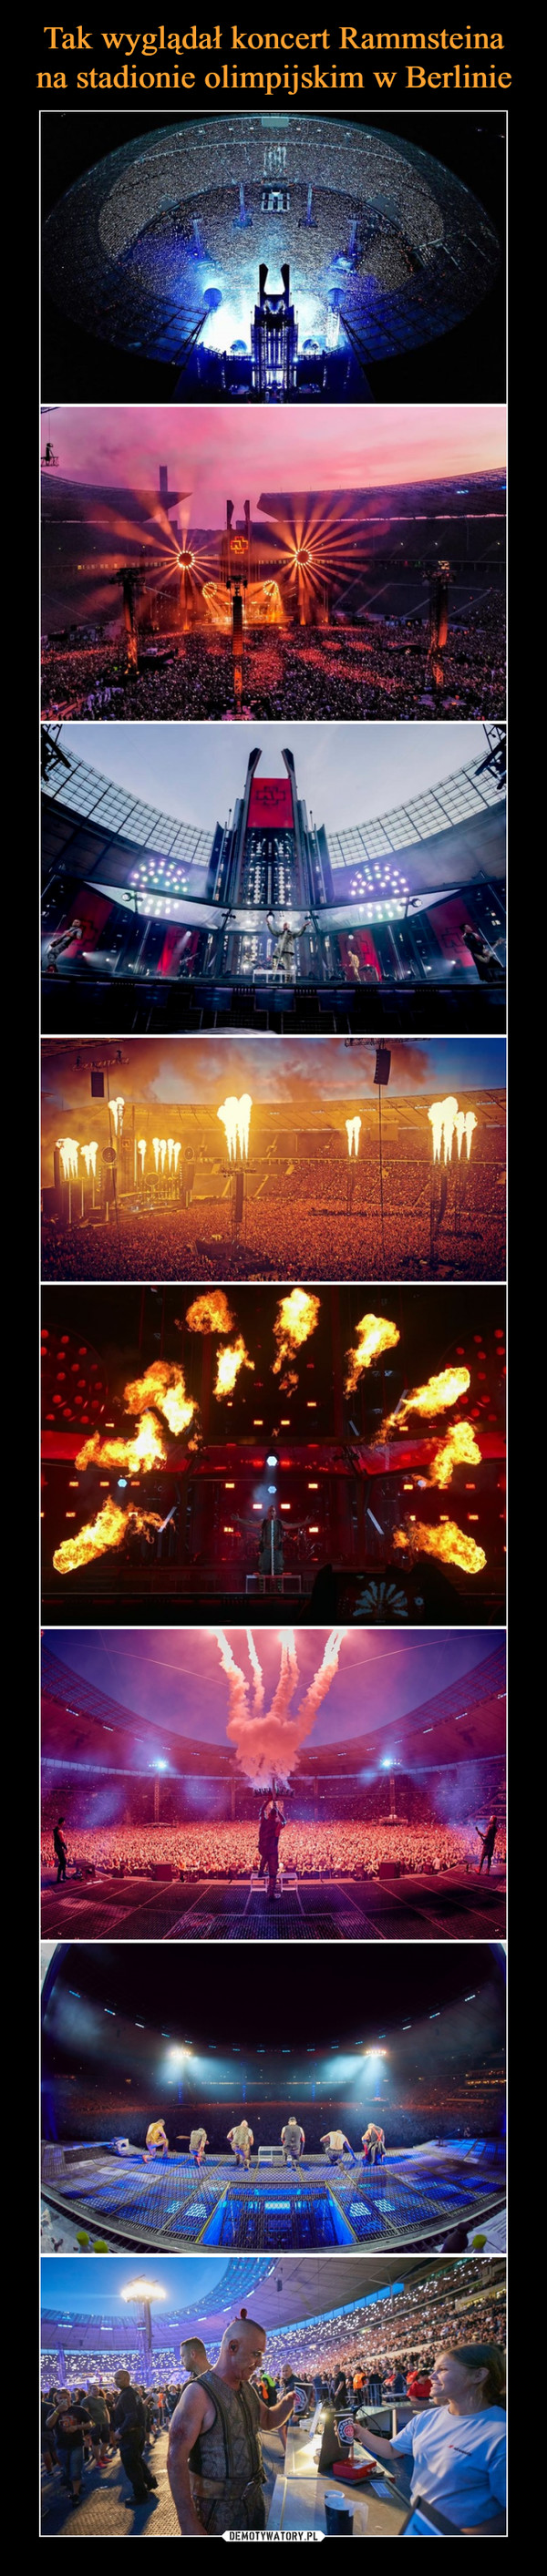 Tak wyglądał koncert Rammsteina na stadionie olimpijskim w Berlinie